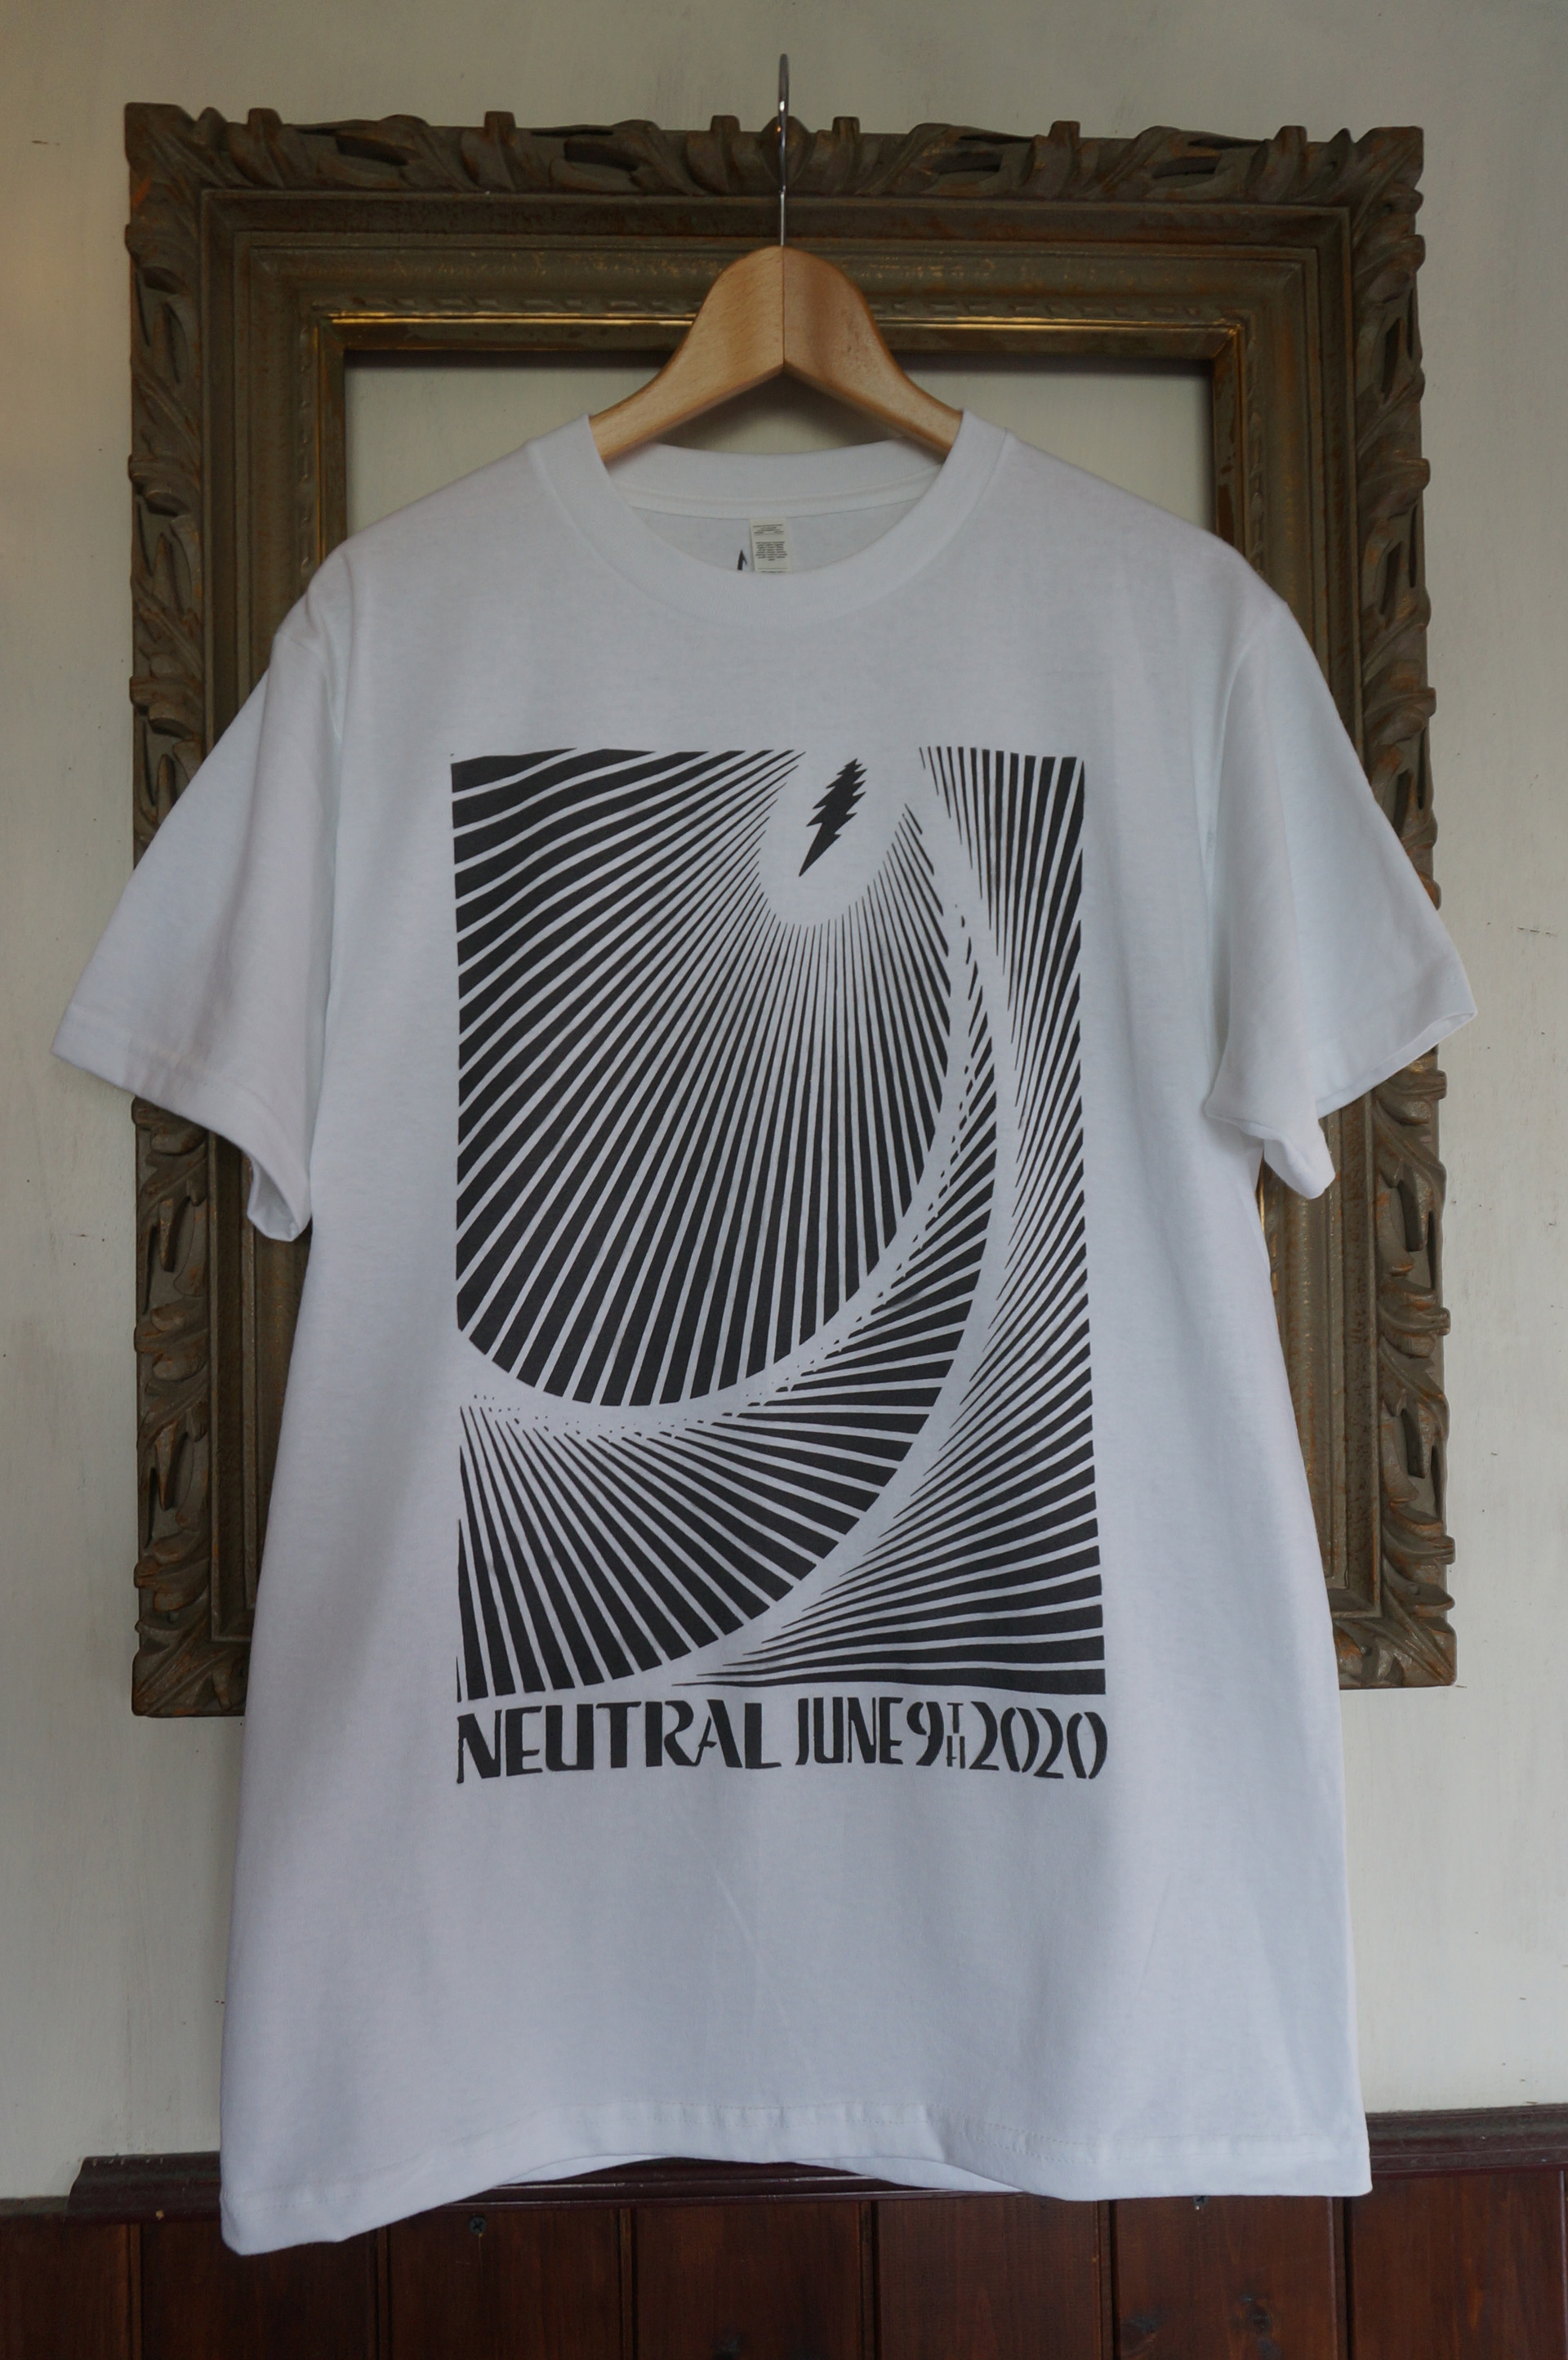 NEUTRAL ニュートラル 9tn anniversary 9周年 stencil ステンシルTシャツ